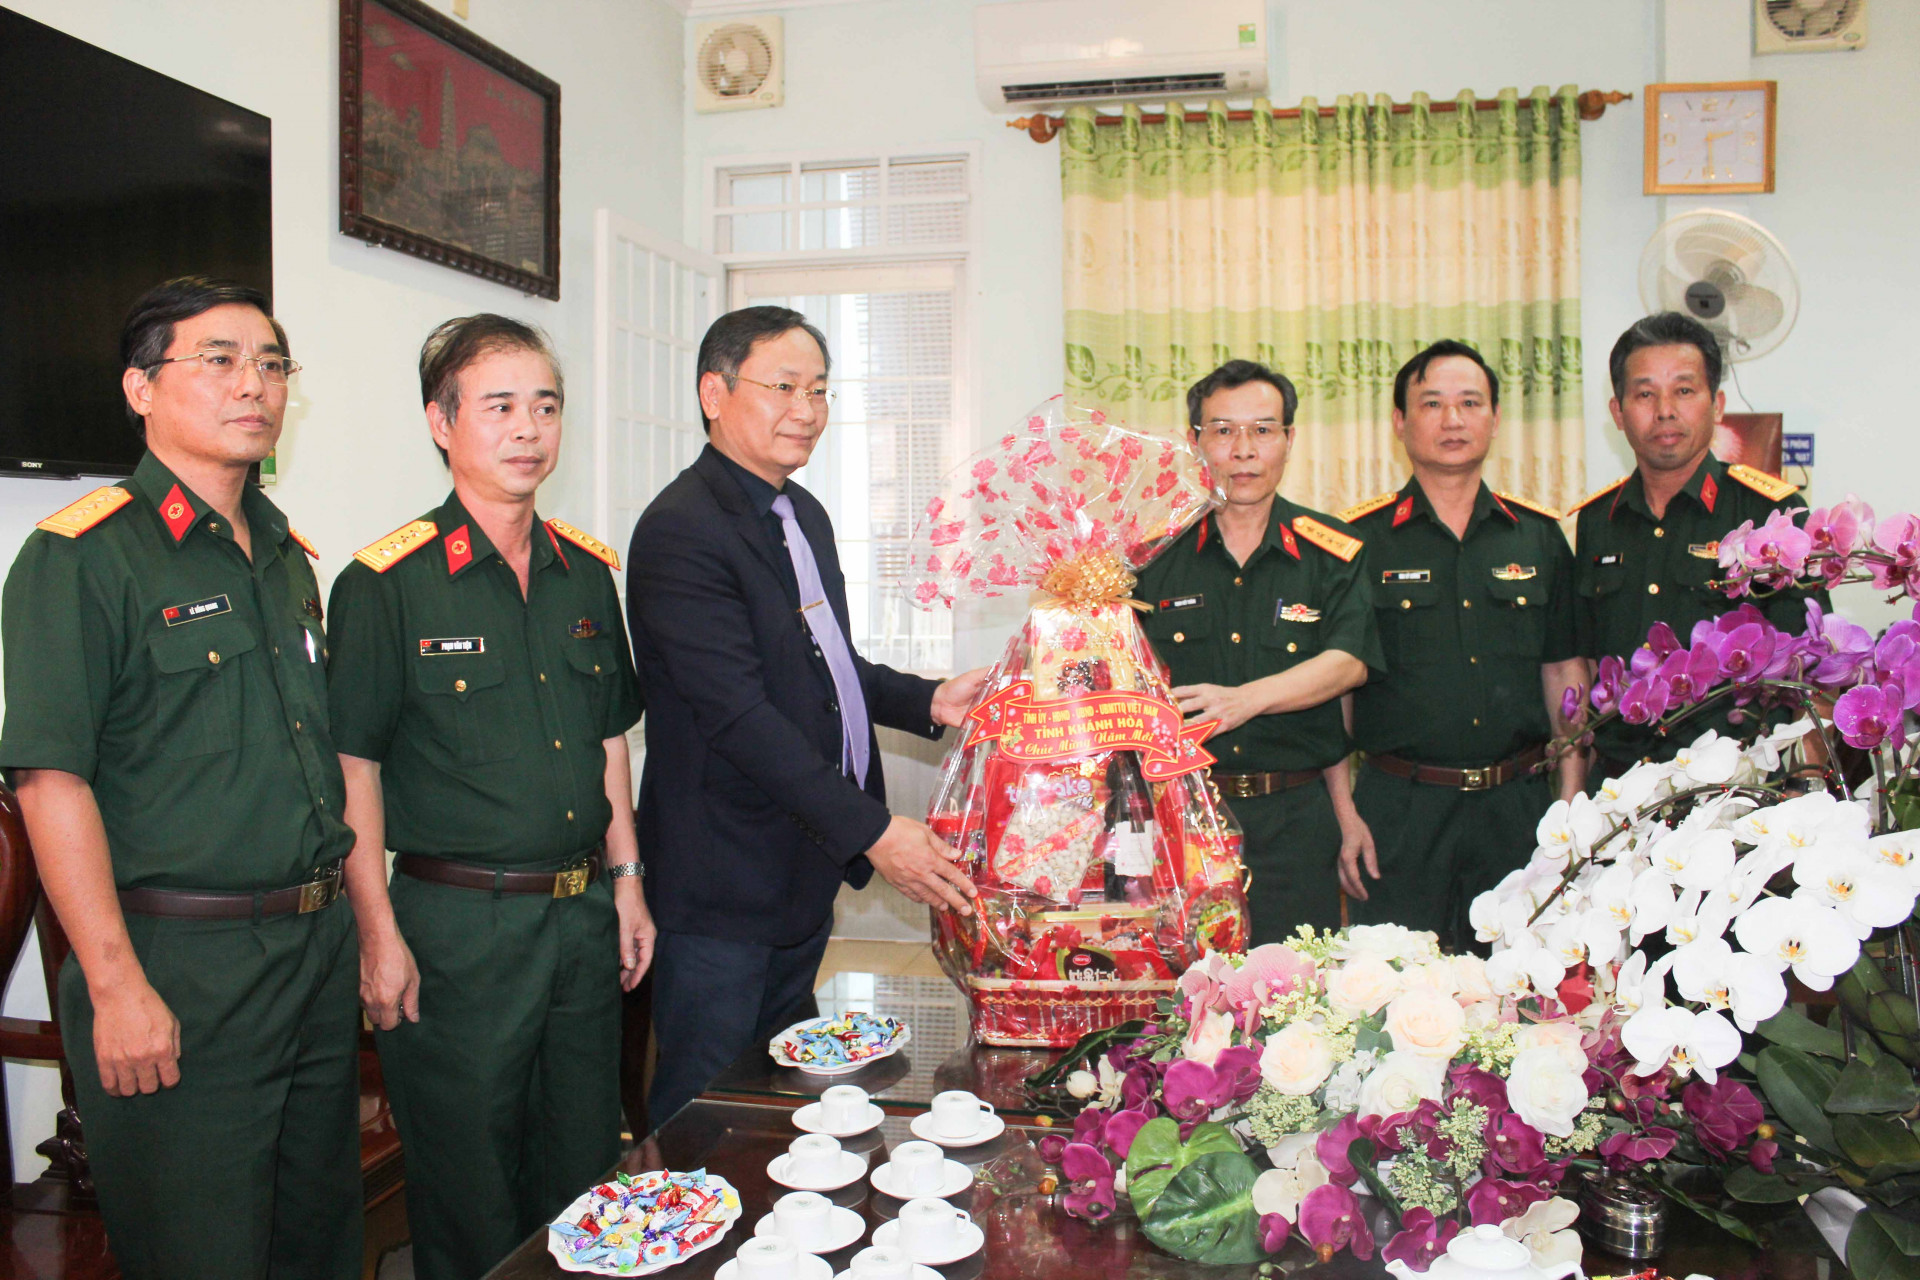 Đồng chí Nguyễn Đắc tài tặng quà cho lãnh đạo Bện viện Quân y 87